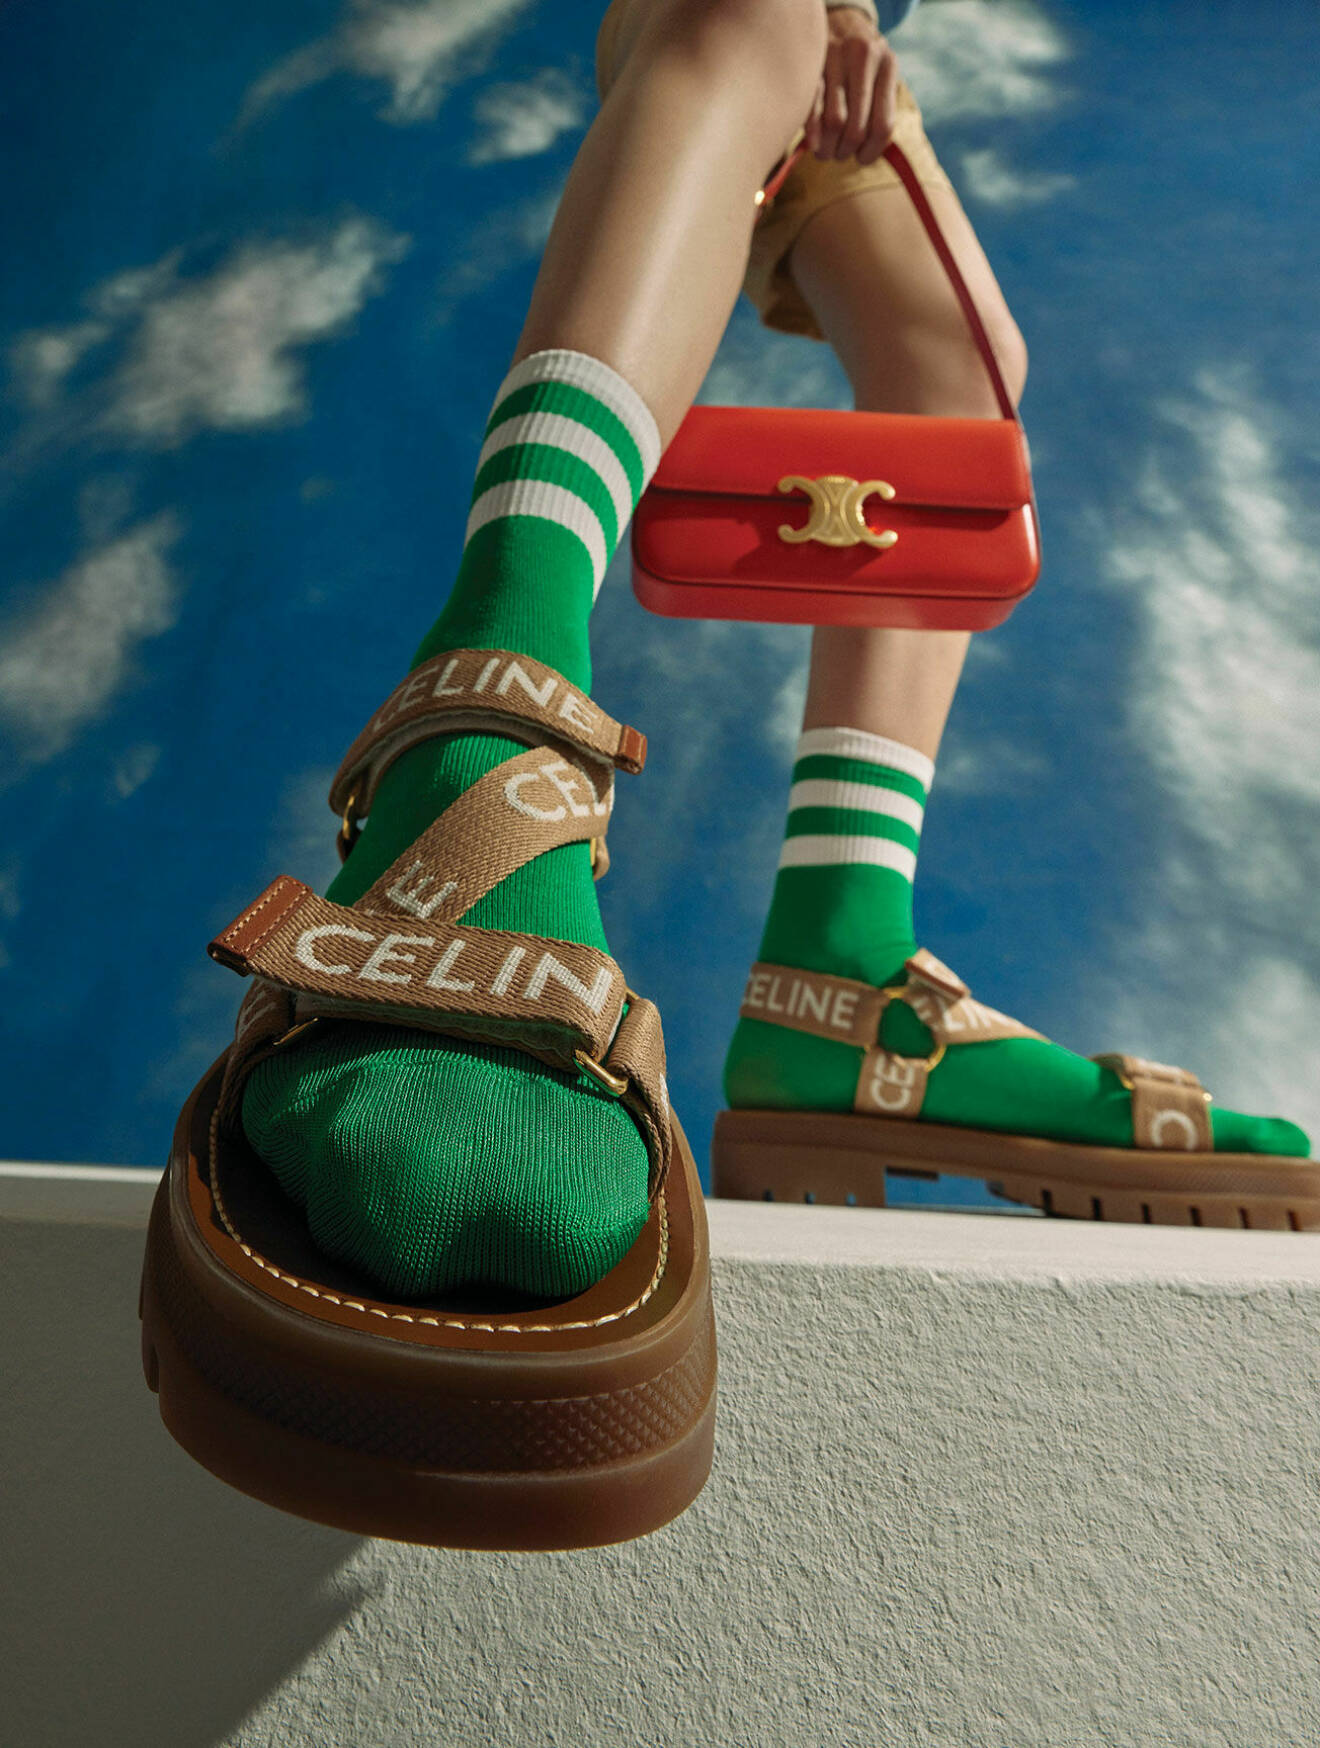 Modellen har på sig bruna sandaler och en håller i en röd handväska, båda från Celine by Hedi Slimane